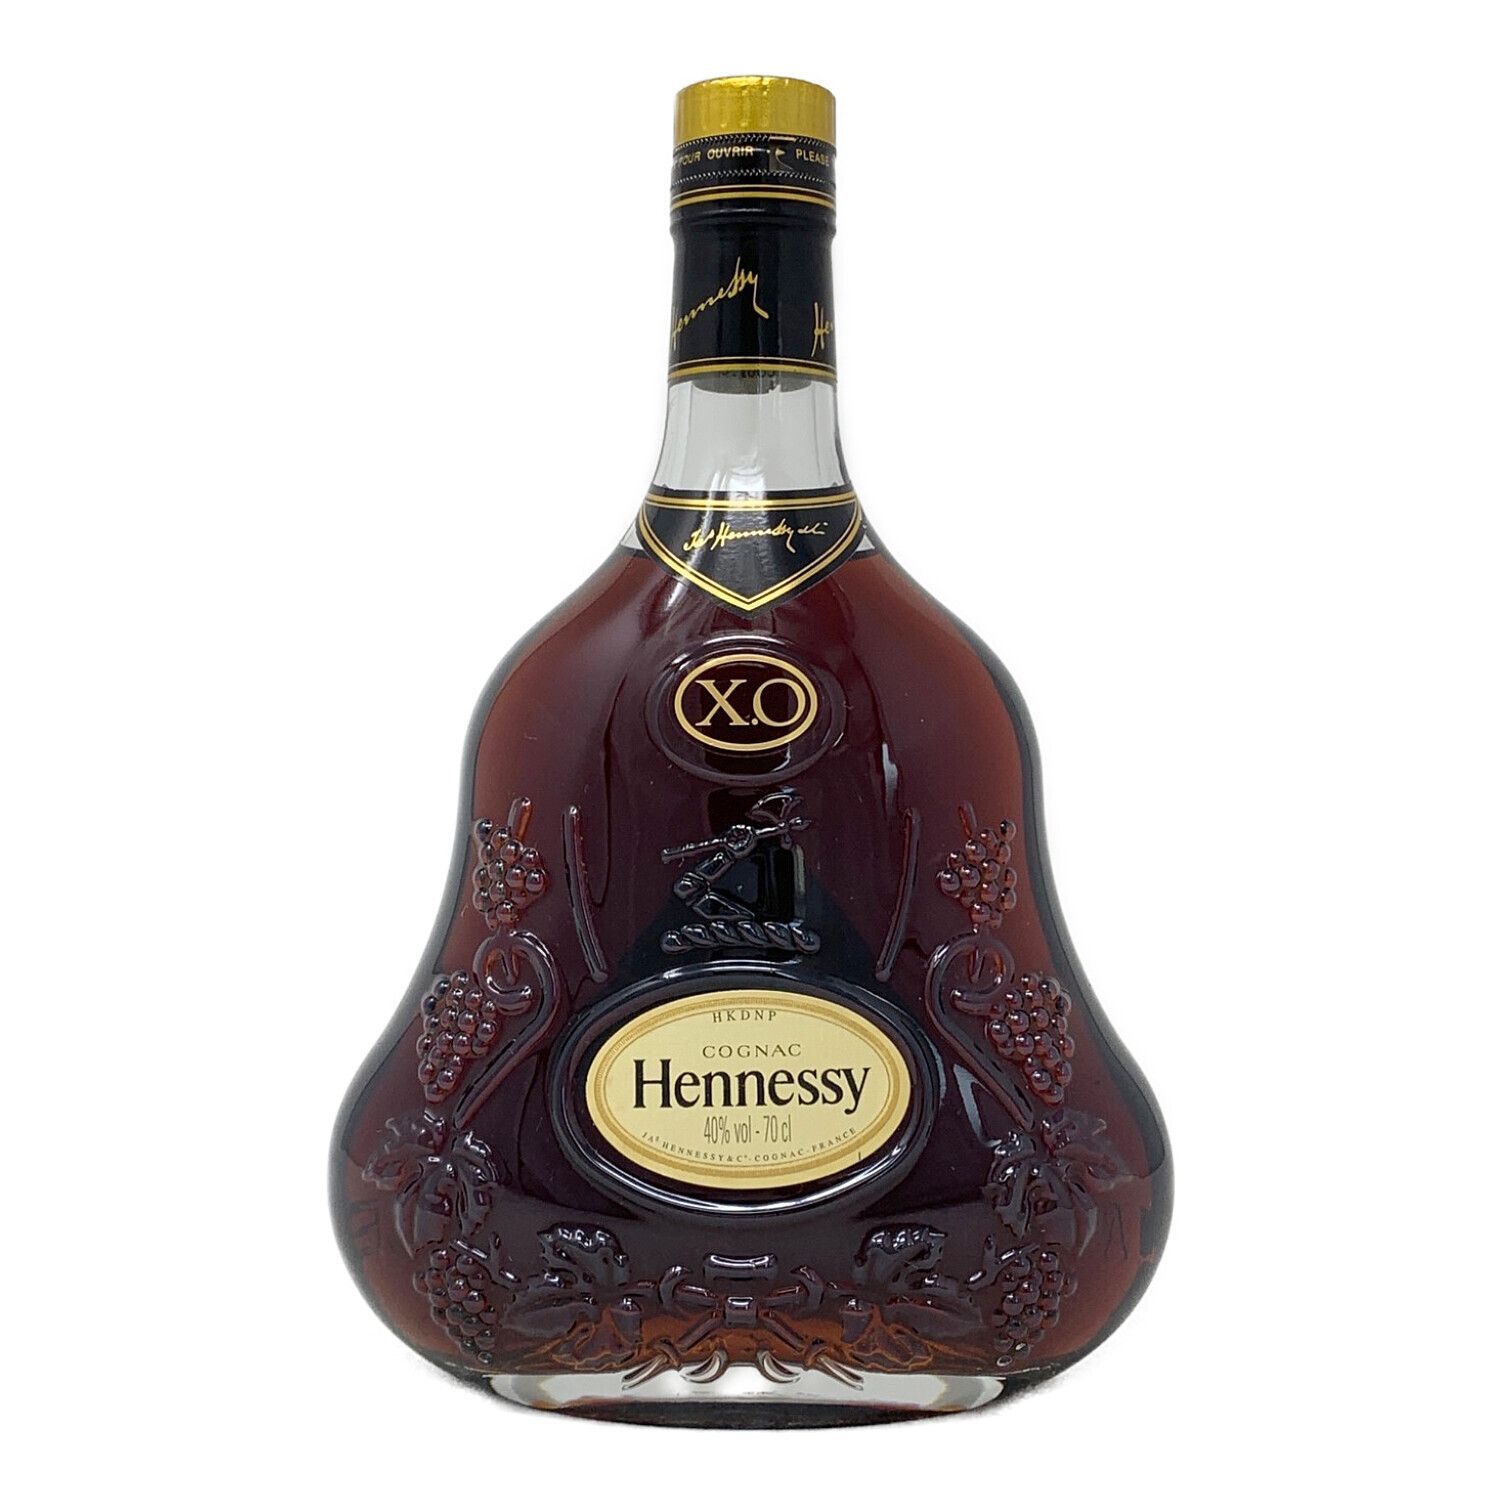 ヘネシー (Hennessy) コニャック 700ml XO 金キャップ クリアボトル 未